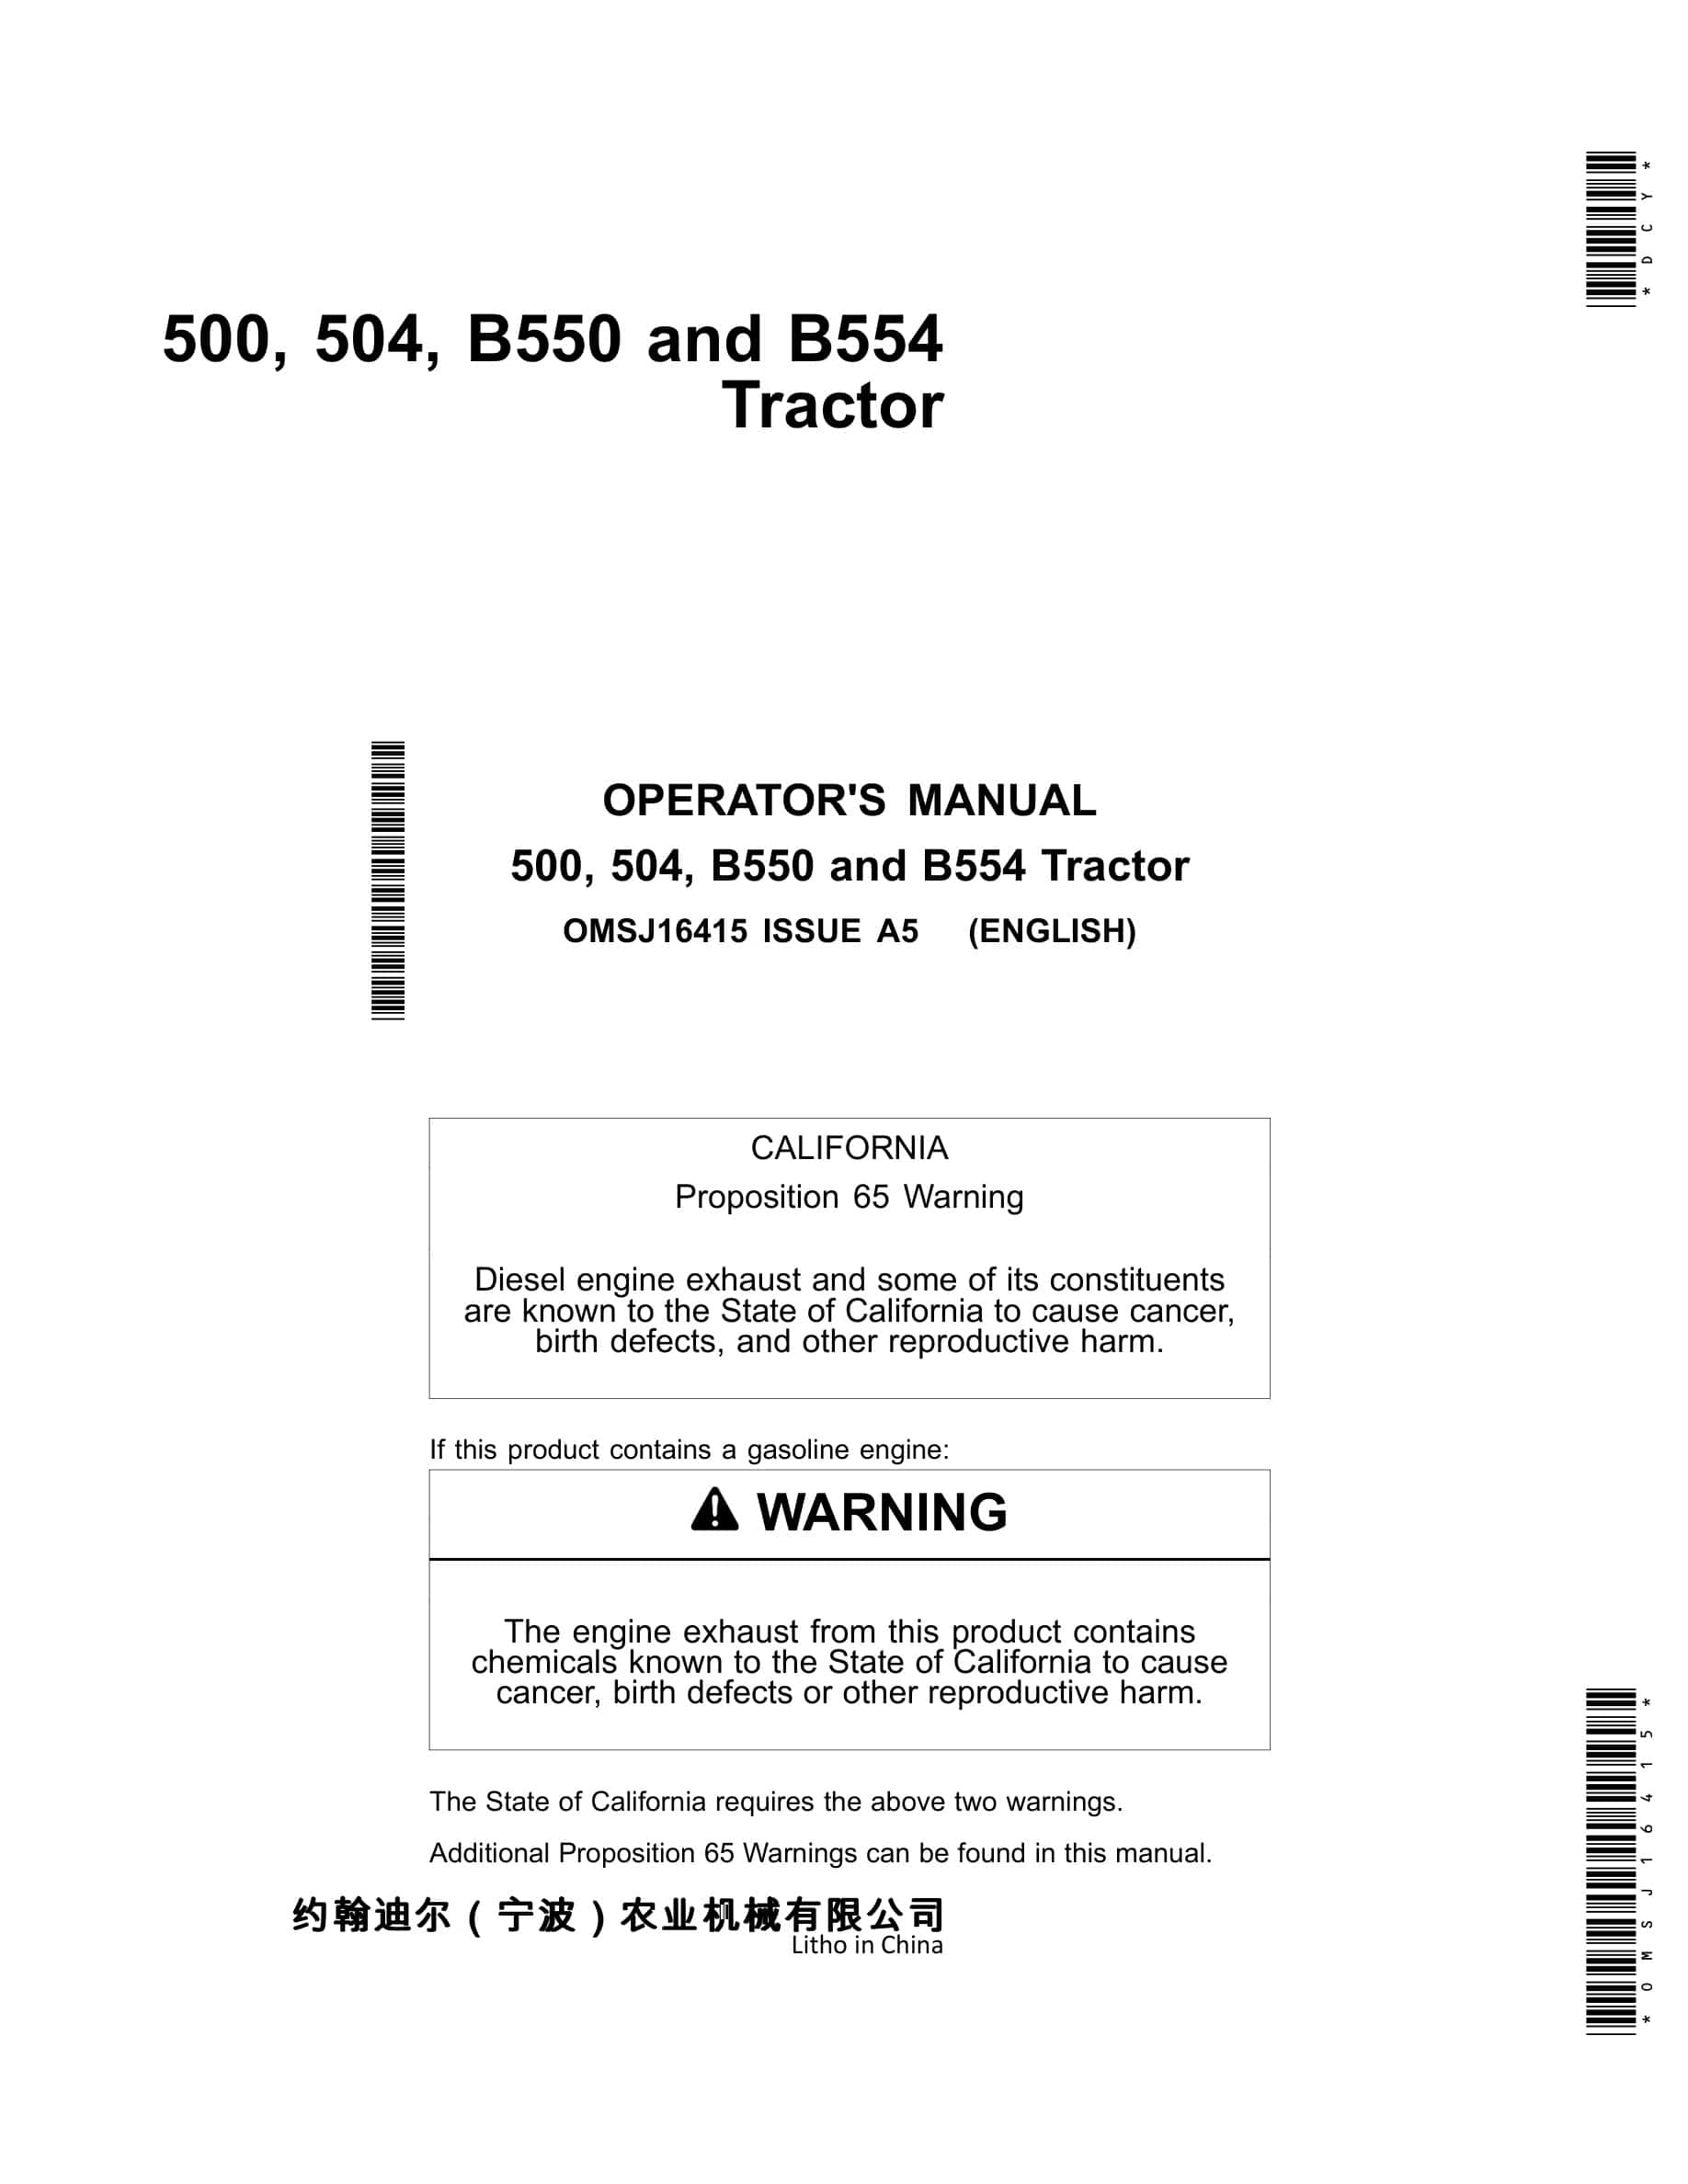 John Deere 500, 504, B550 And B554 Tractors Operator Manual OMSJ16415-1